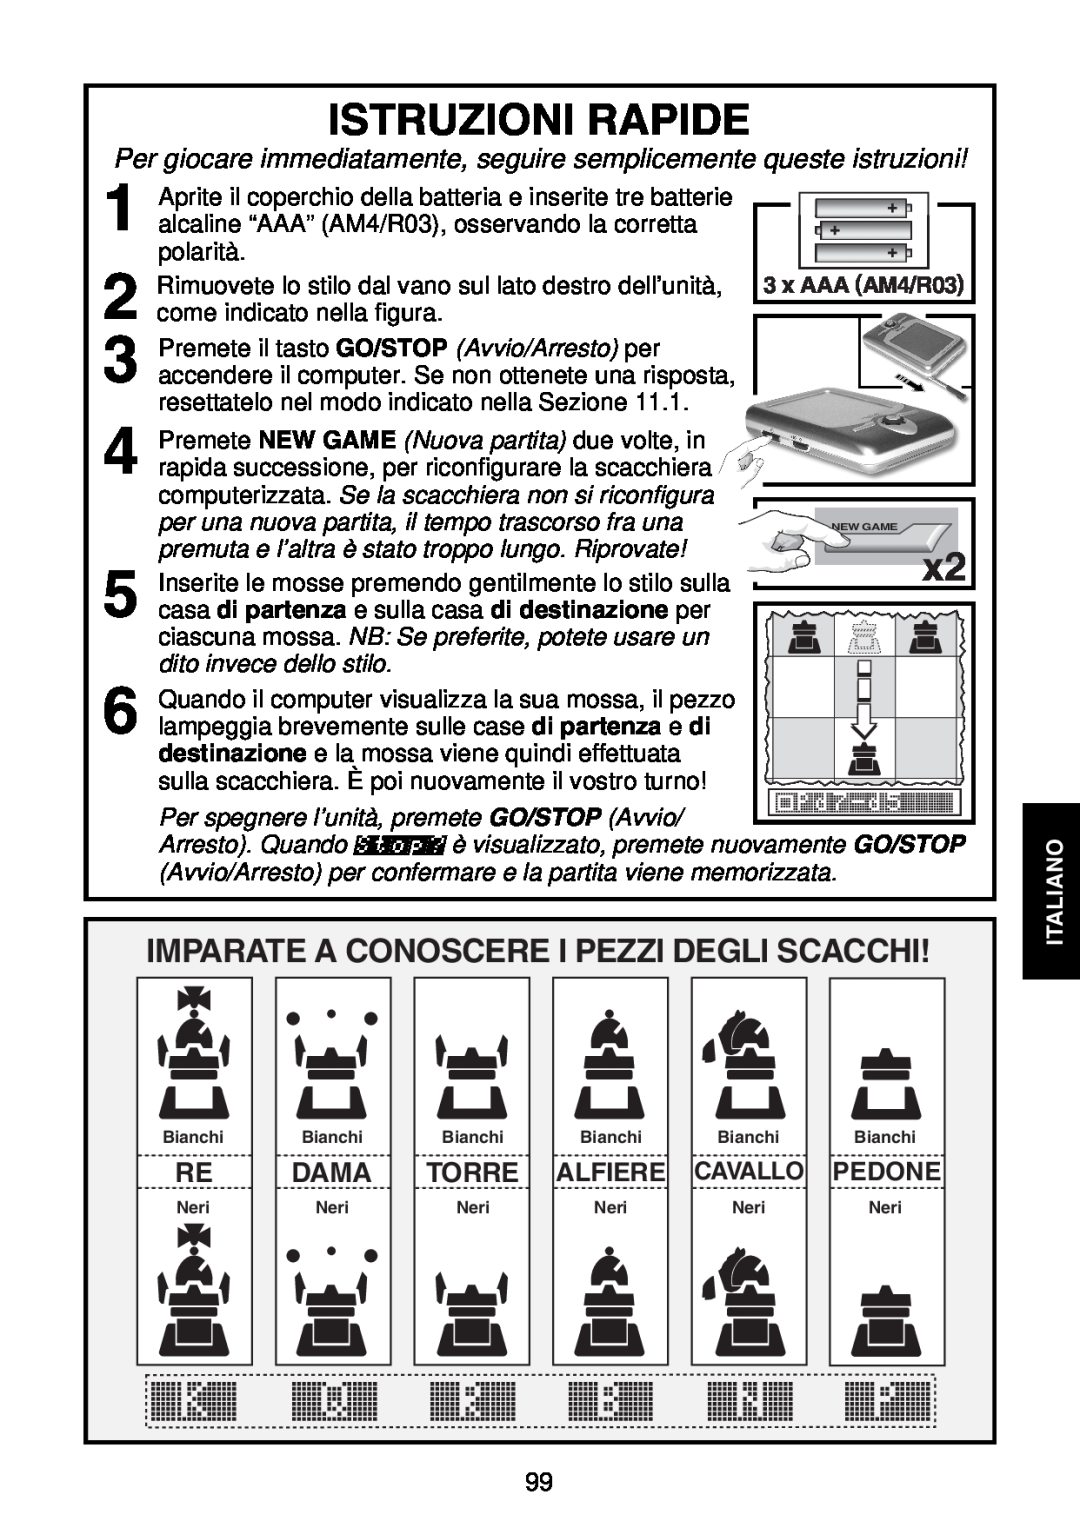 Saitek Maestro Travel Chess Computer manual Istruzioni Rapide, Dama, Torre, x AAA AM4/R03, dito invece dello stilo, Alfiere 